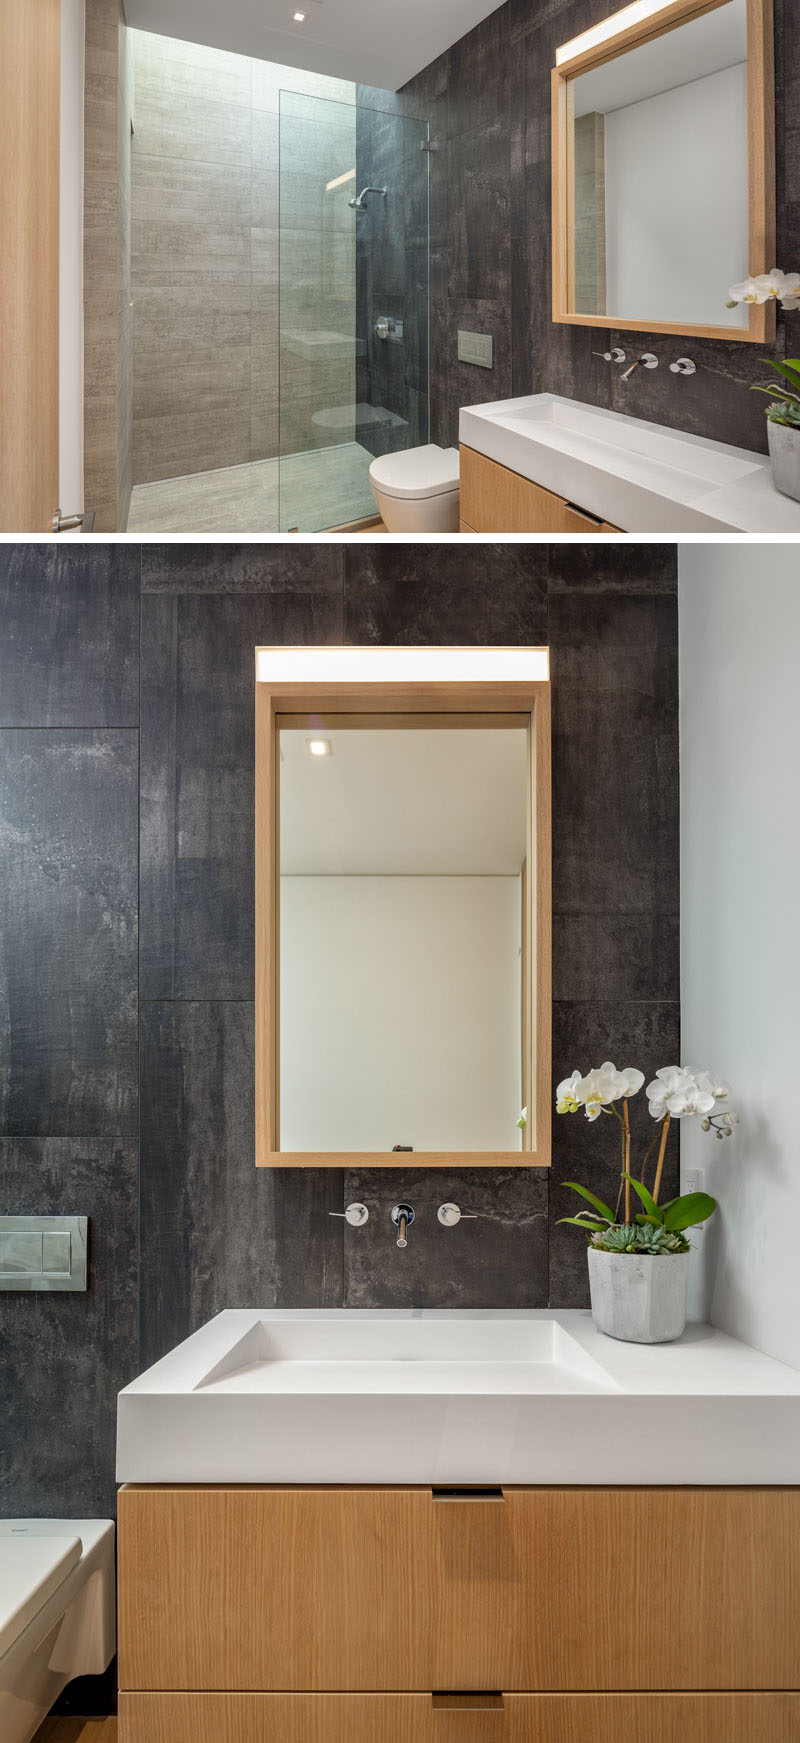 Идеи для ванных комнат - В этой современной ванной комнате потолочное окно добавляет естественный свет в душ, а деревянный туалетный столик с соответствующим зеркалом добавляет естественности. #BathroomIdeas # ModernBathroom # WoodVanity